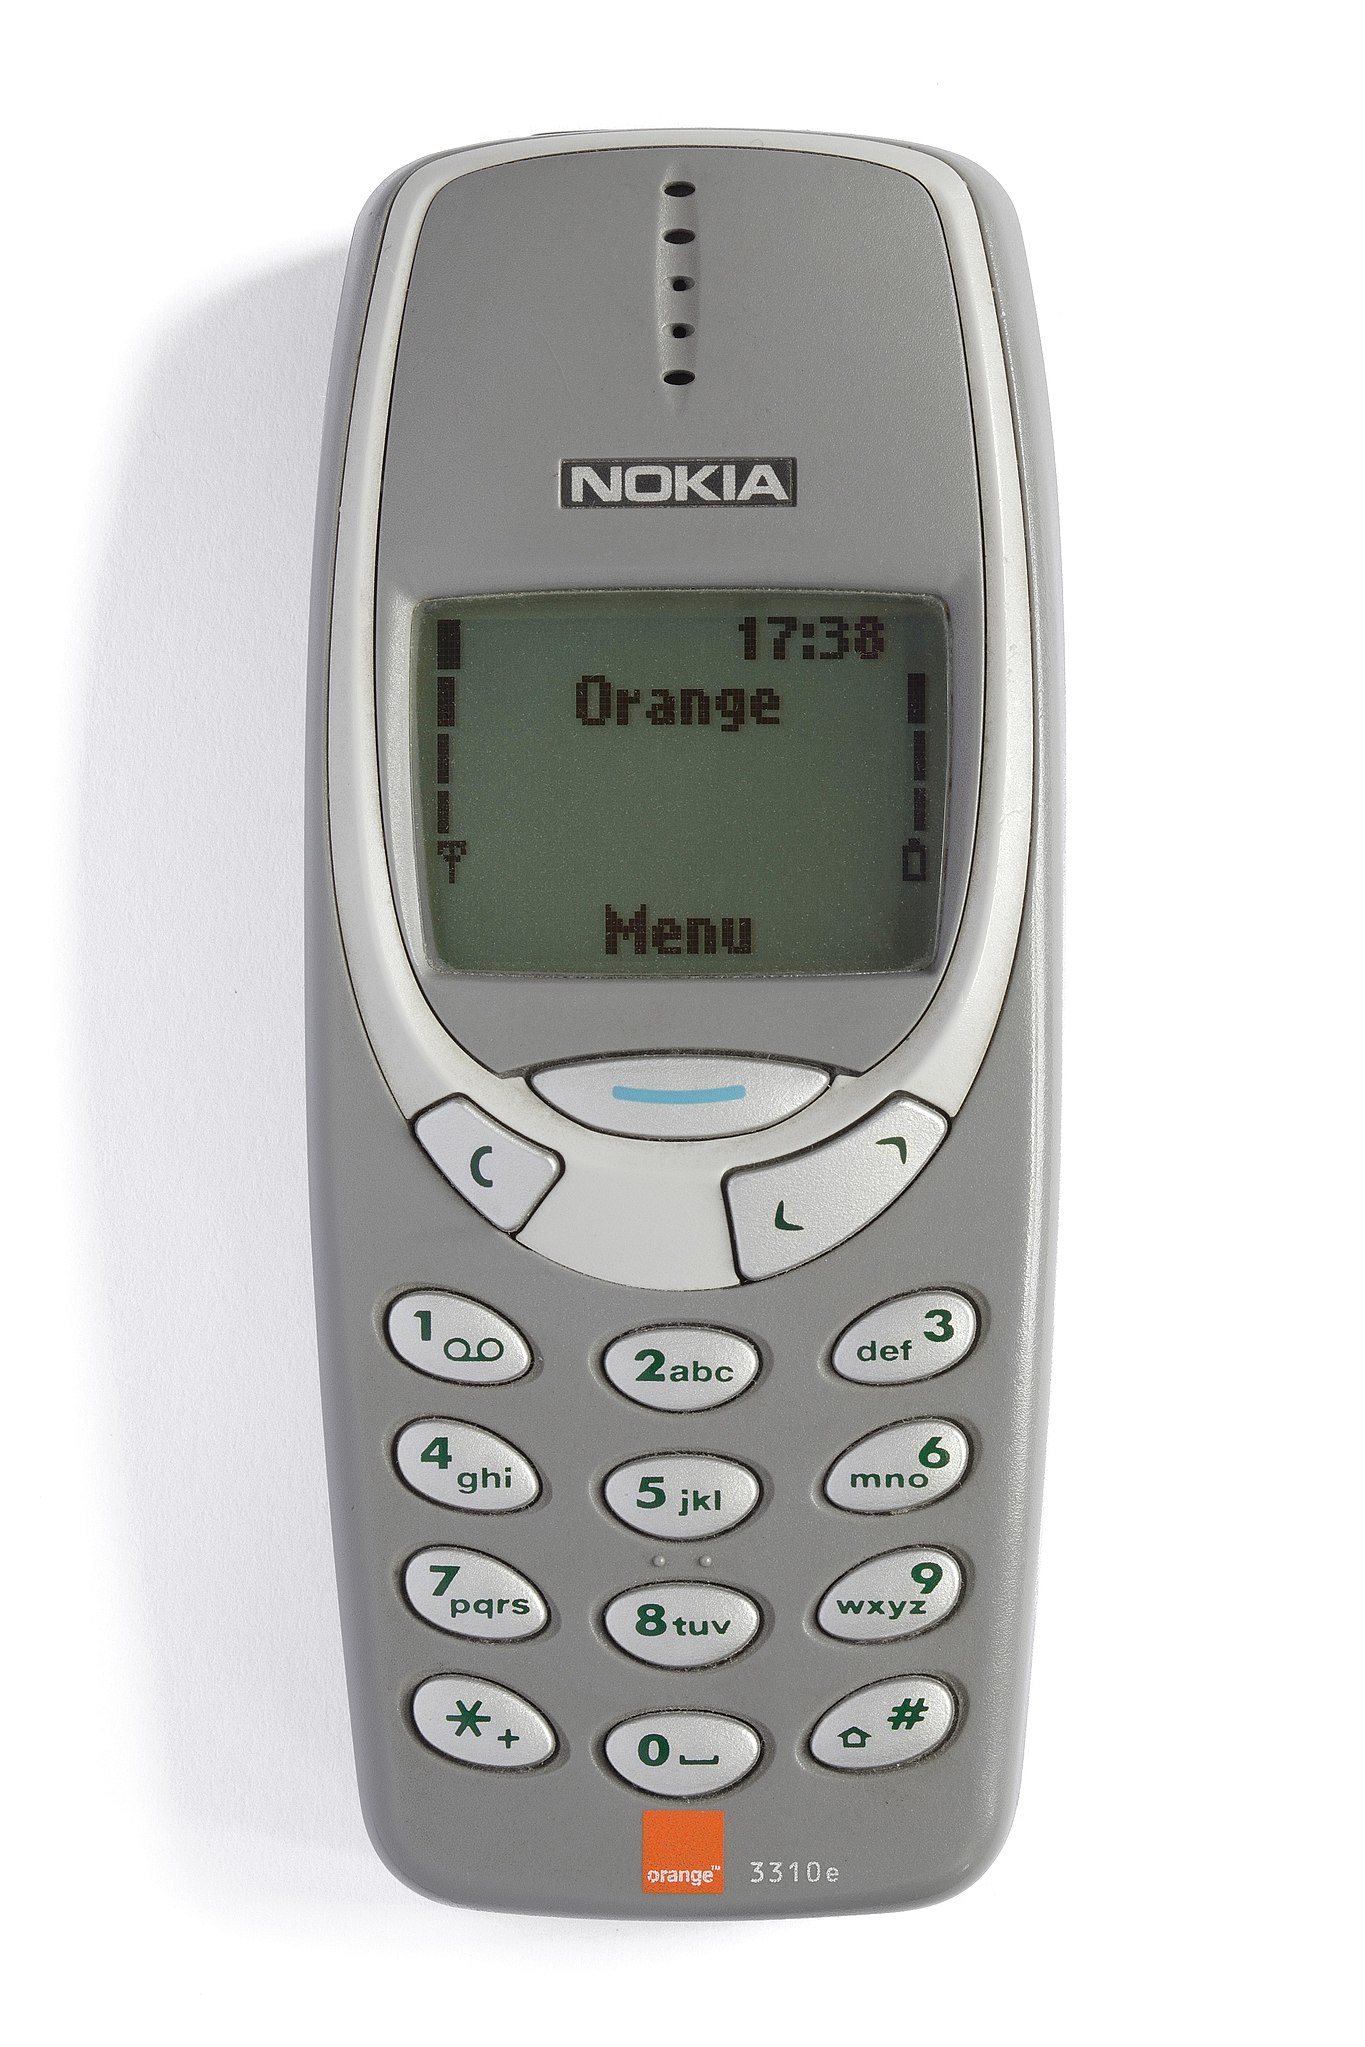 Nokia 3310 Blue Nokia orange